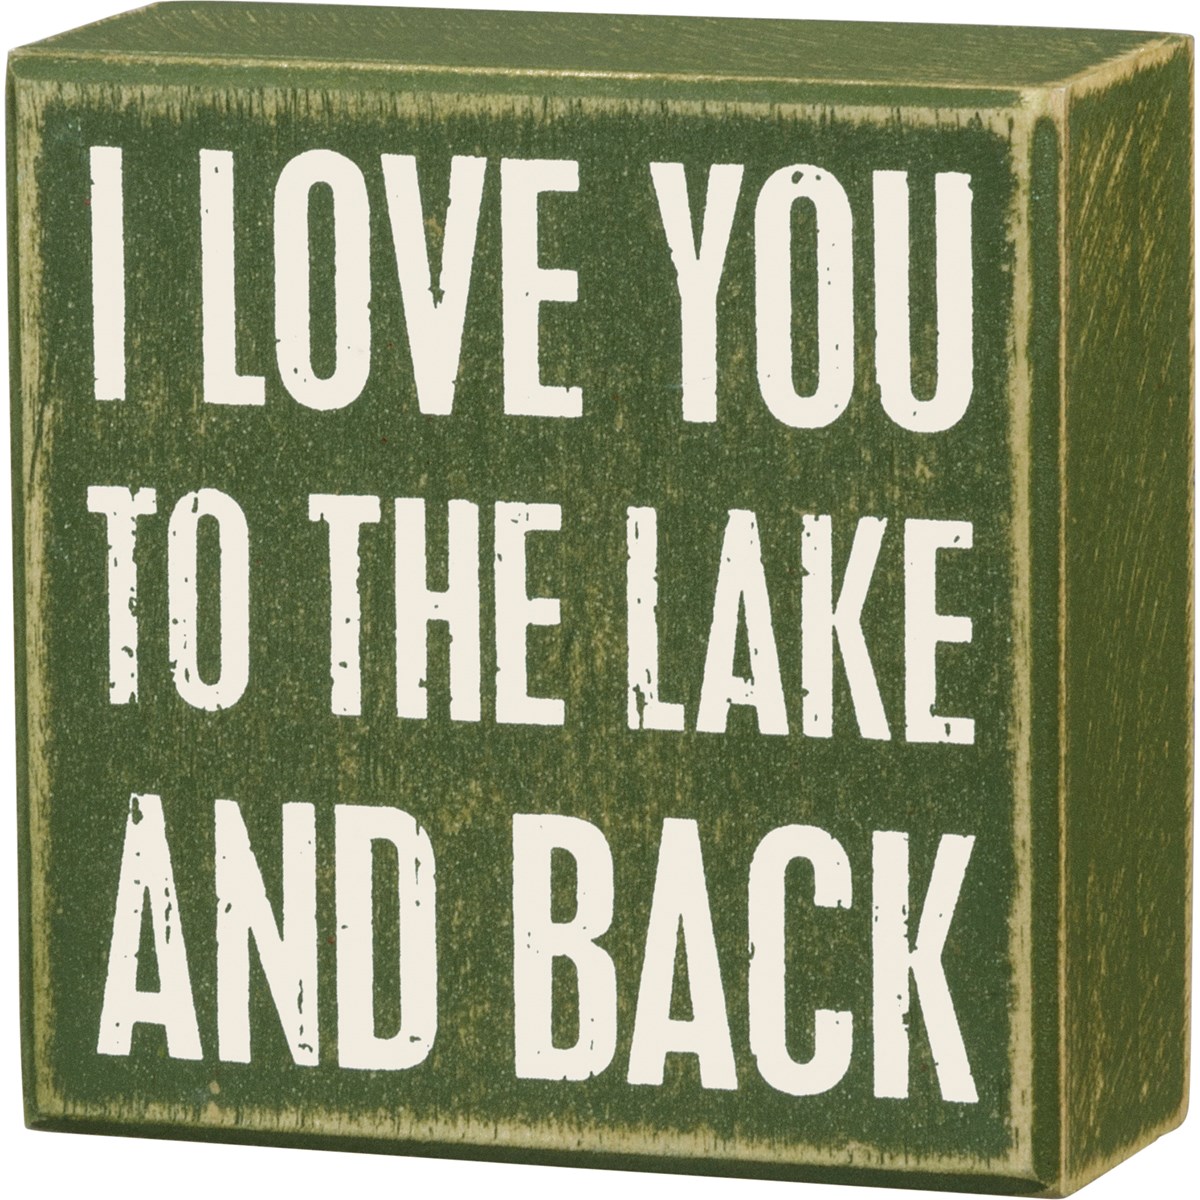 Lake And Back Box Sign - Wood